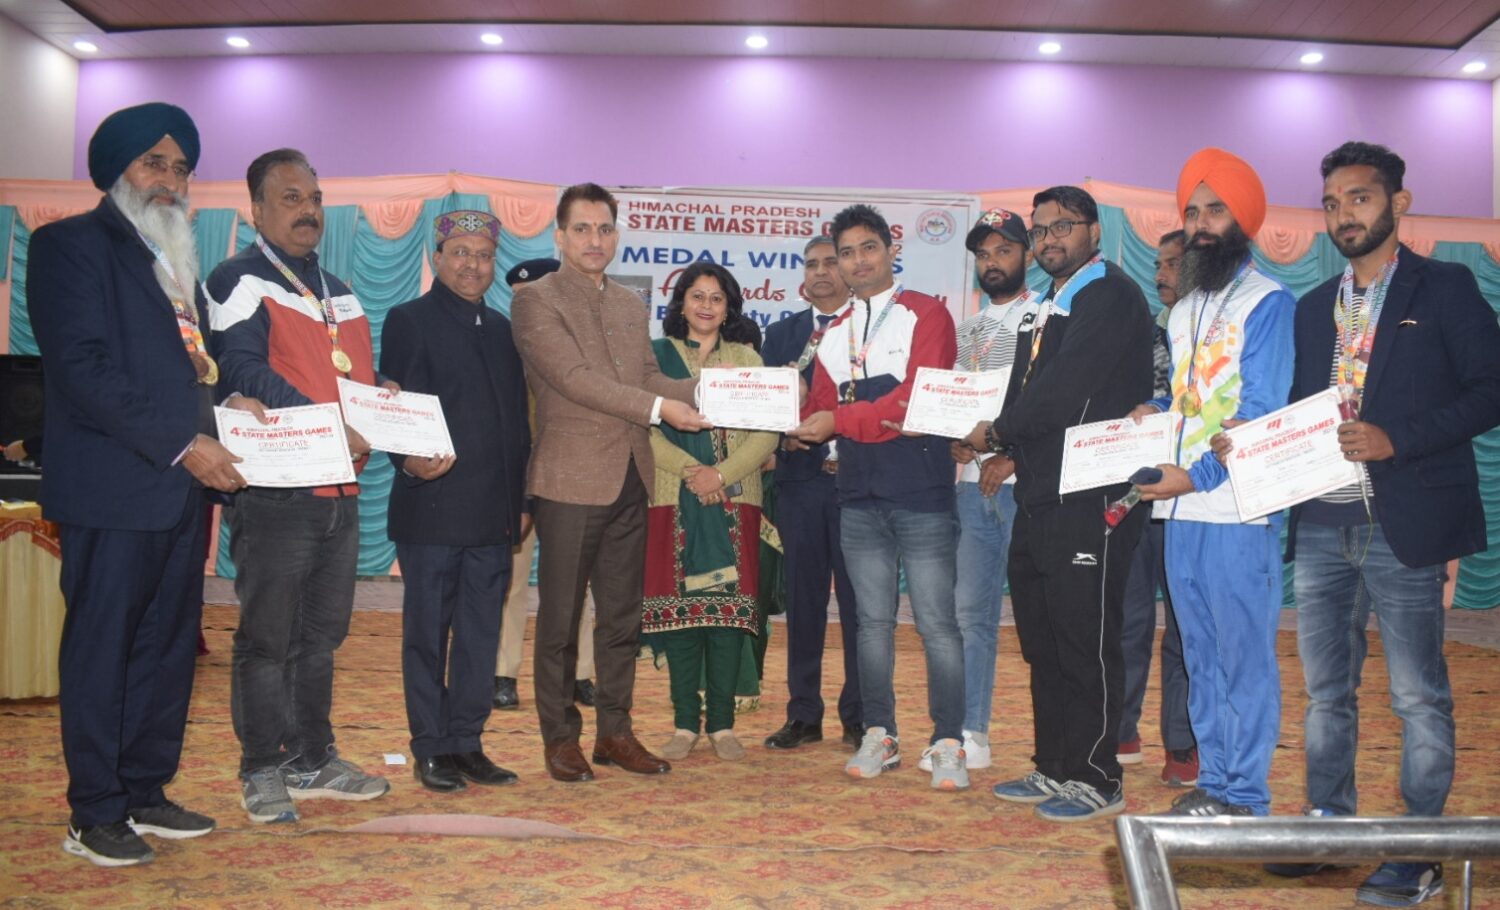 सिरमौर में राज्यस्तरीय मास्टर्स खेल में मेडल विजेताओं को नवाजा